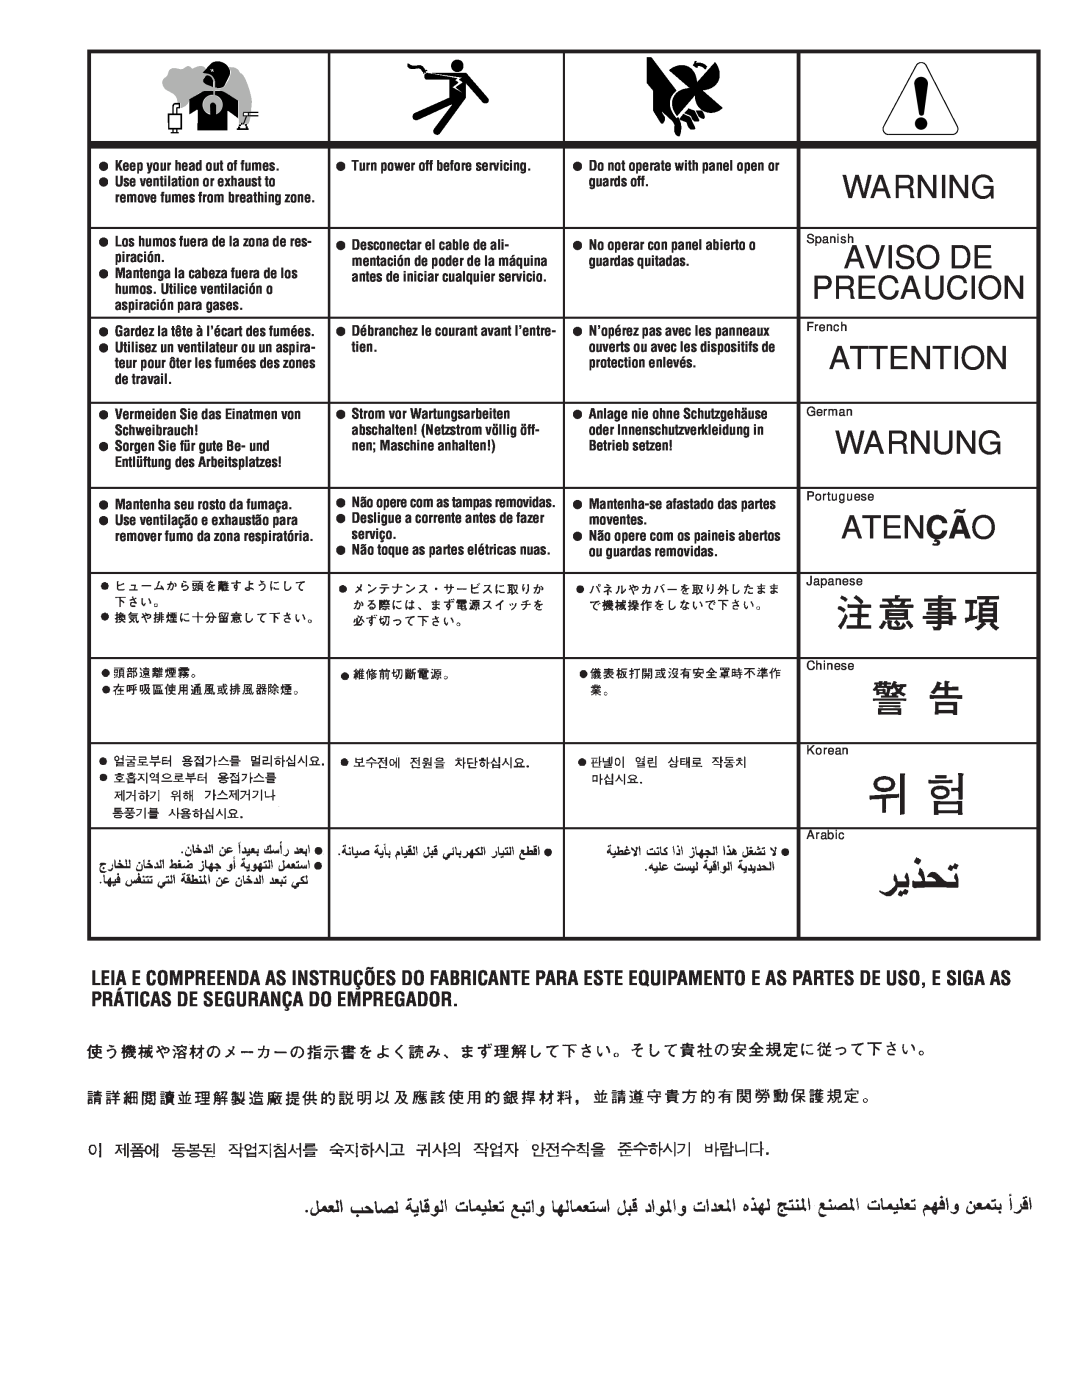 Lincoln Electric 300 DLX manual Warnung, Atenção, Precaucion, Aviso De 